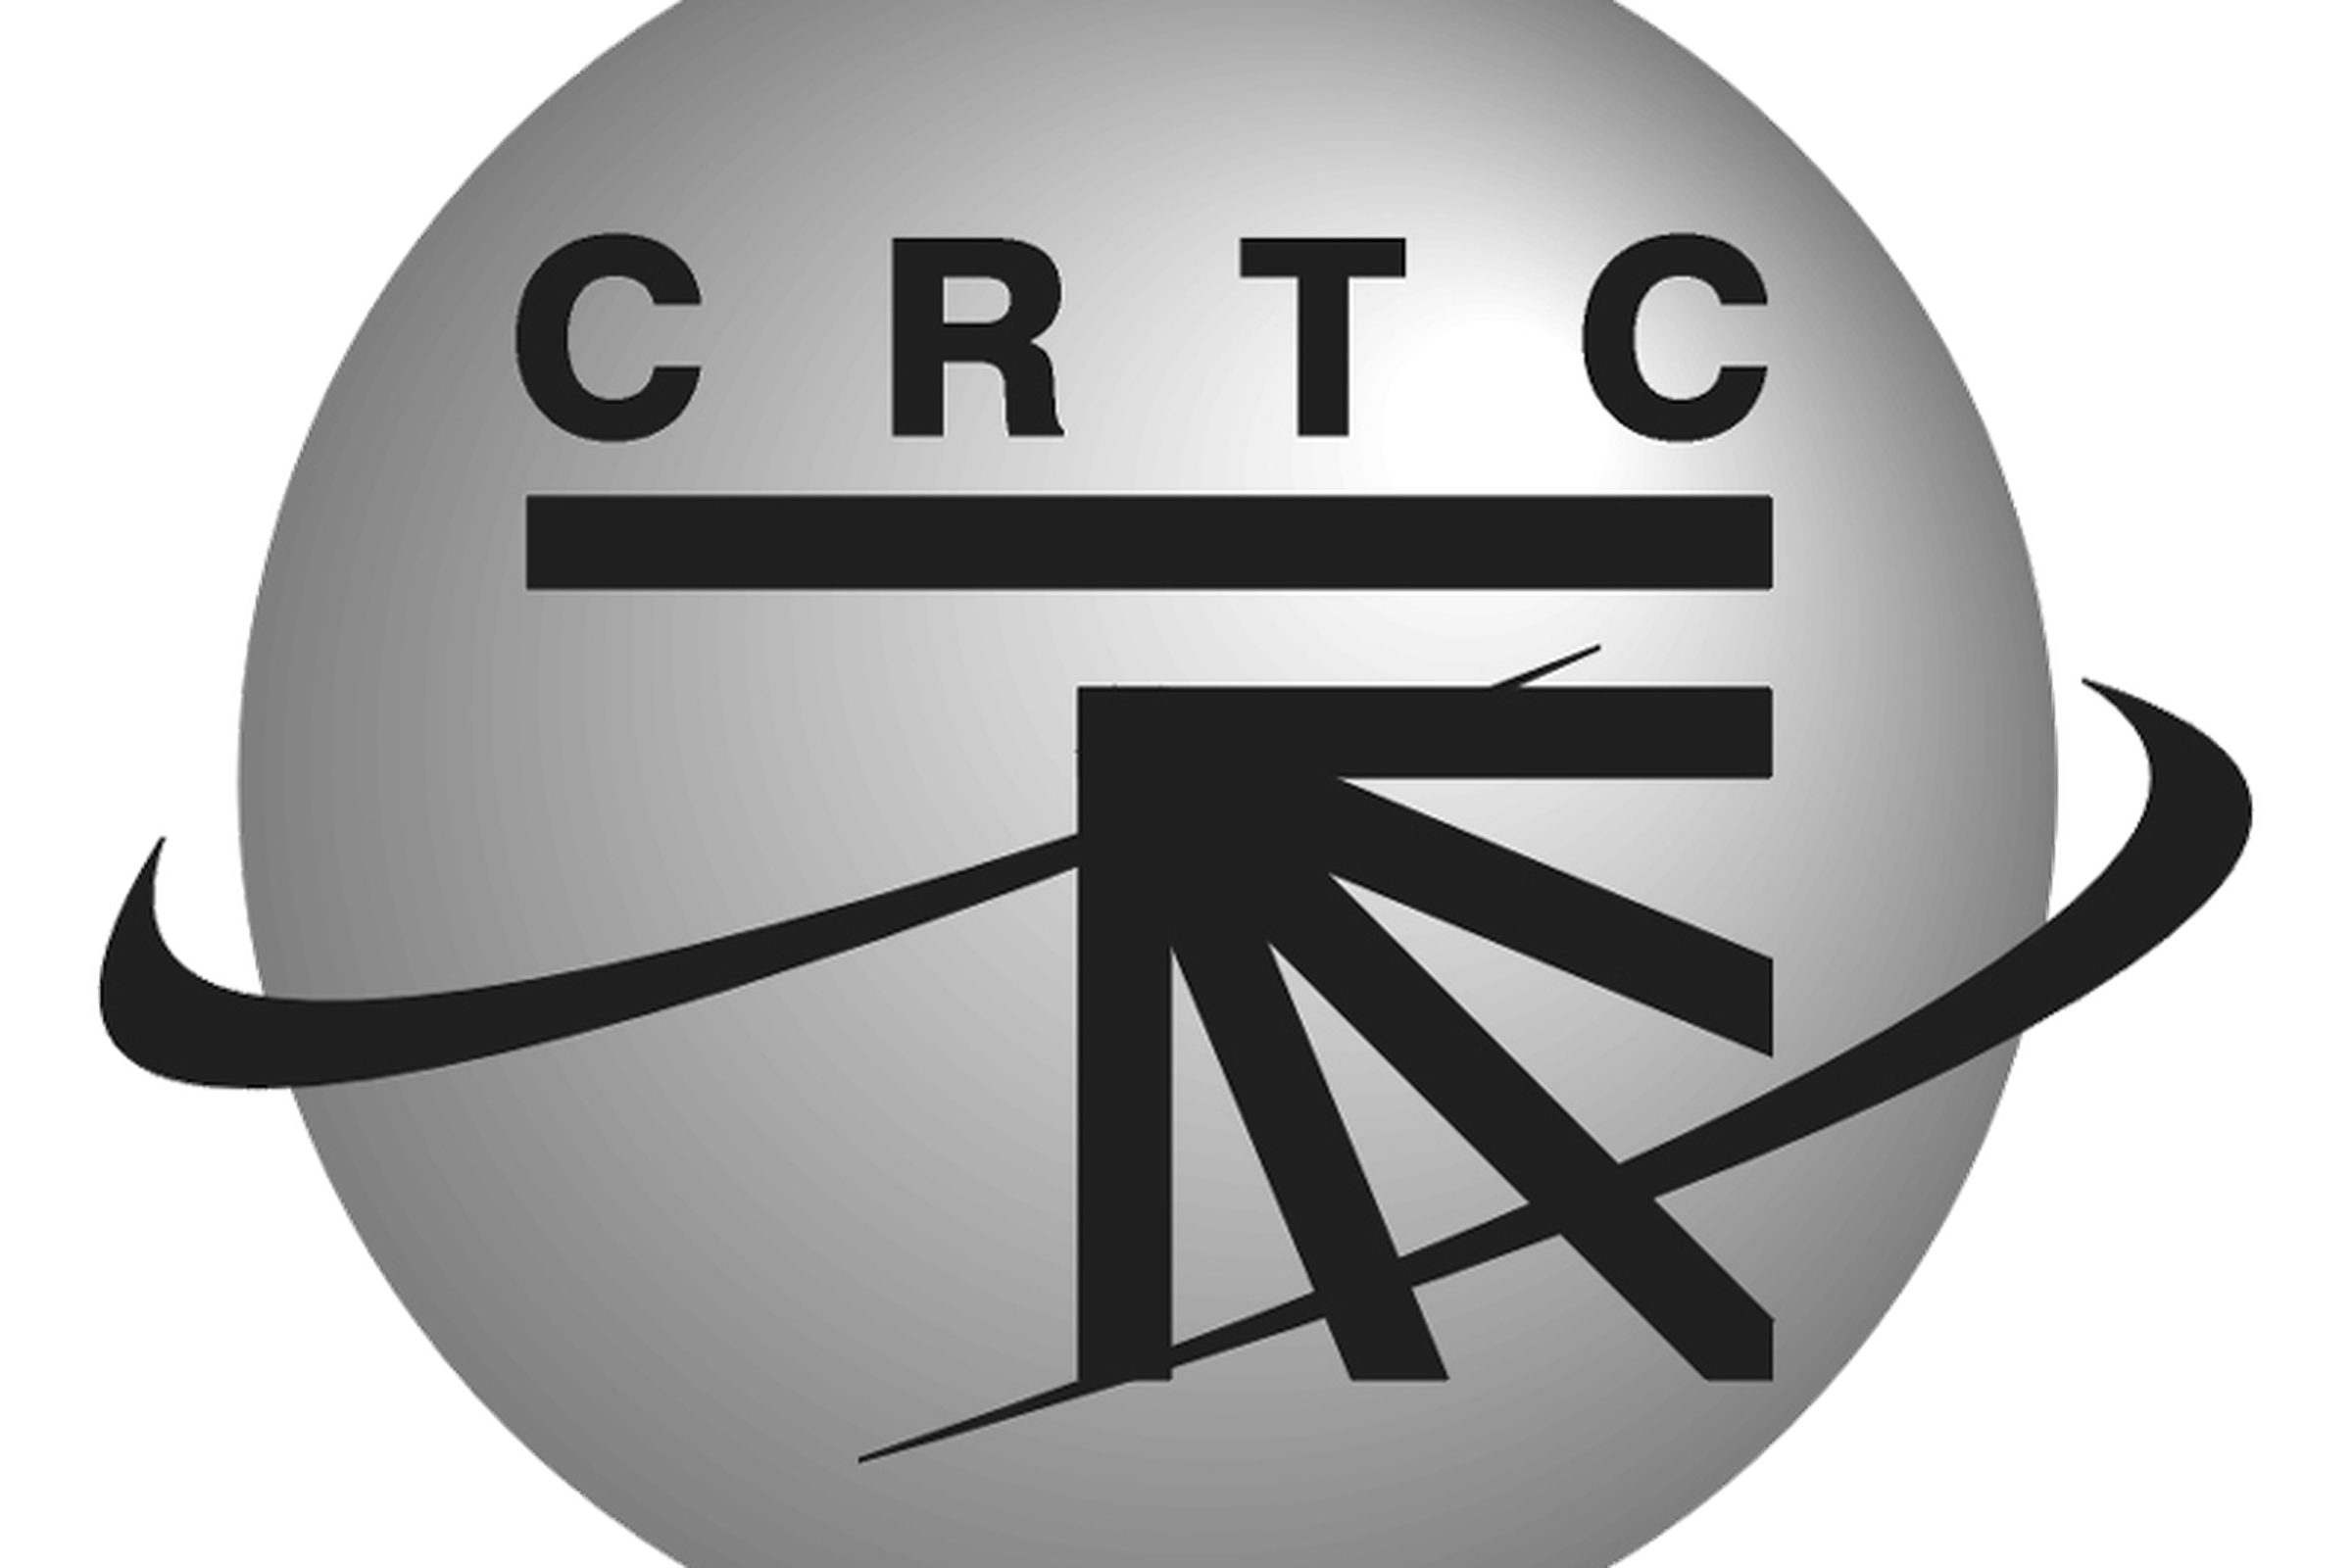 Canada CRTC logo